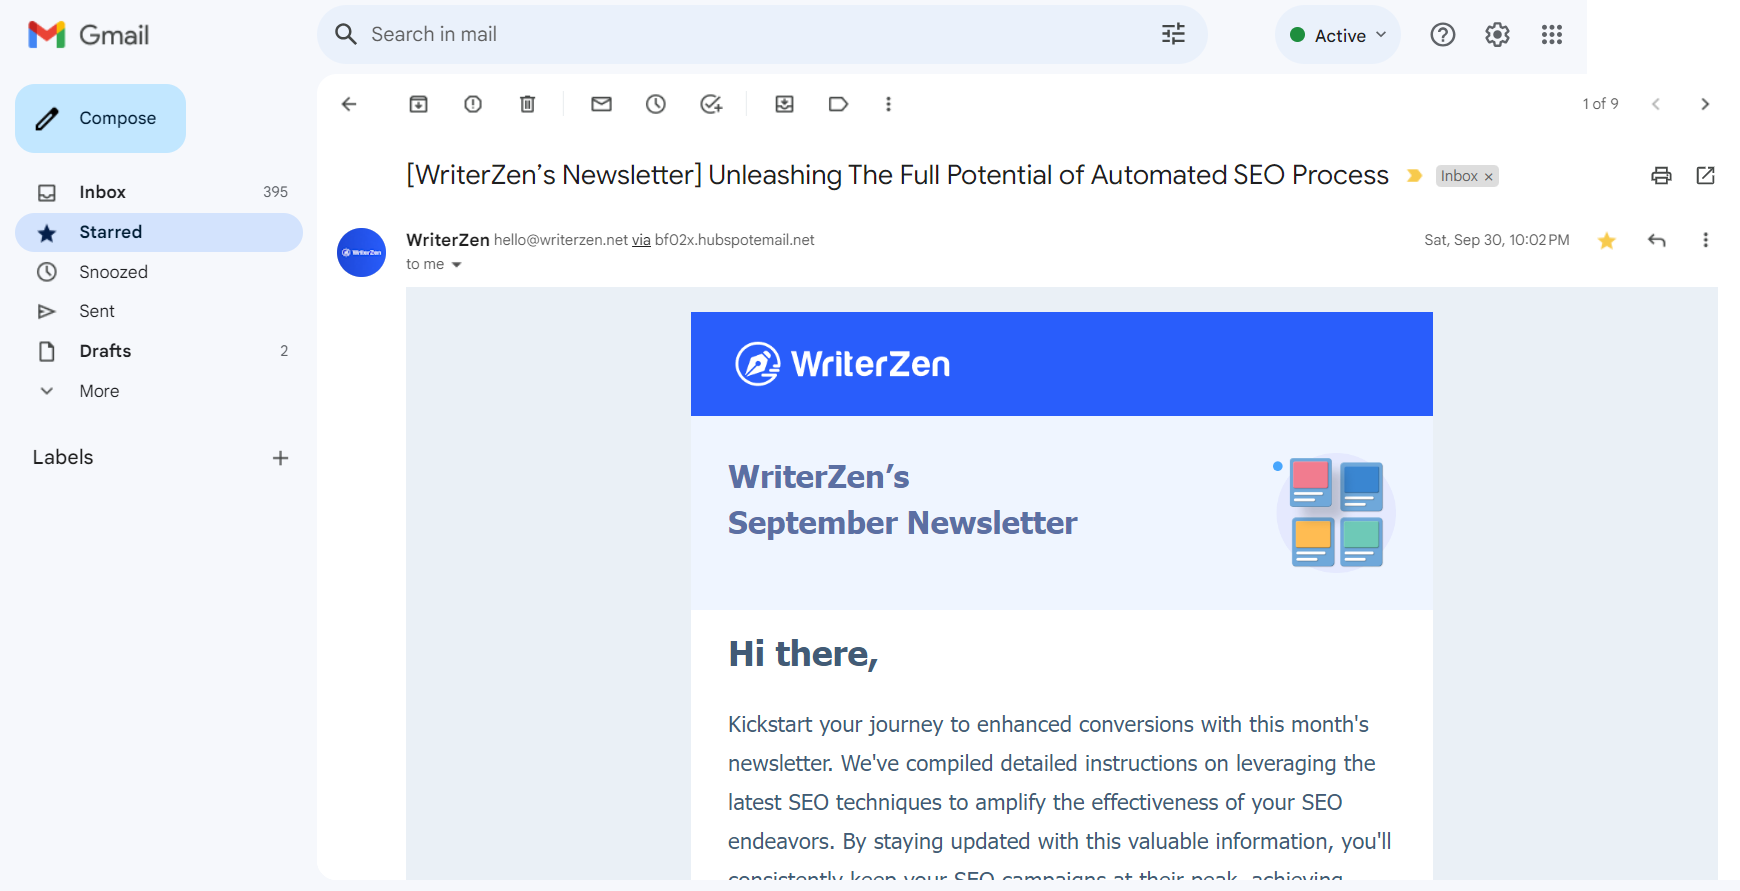 WriterZen's Monthly Newsletter